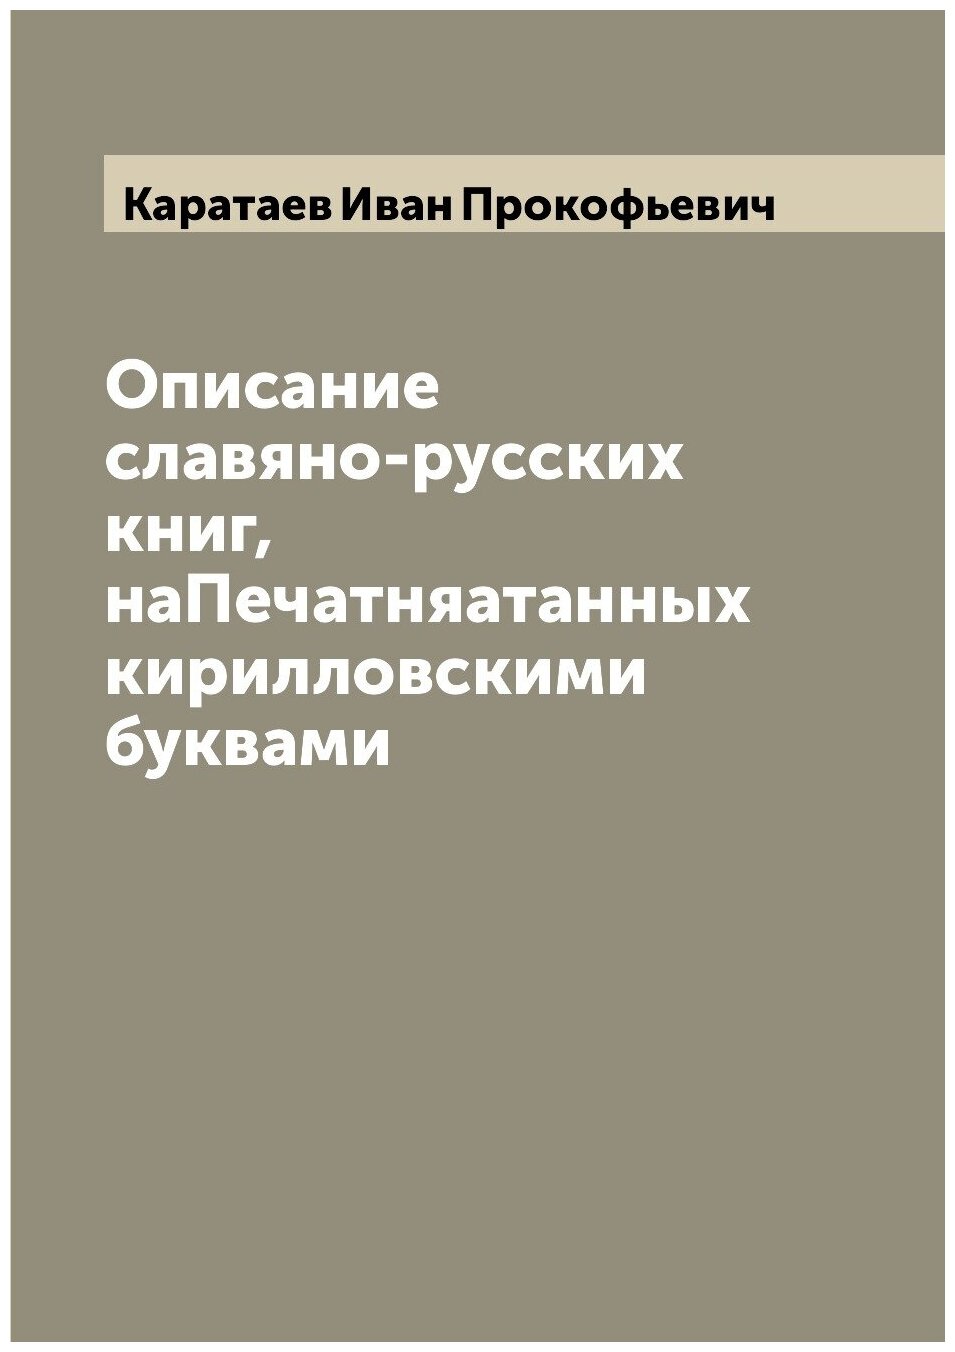 Описание славяно-русских книг, наПечатняатанных кирилловскими буквами